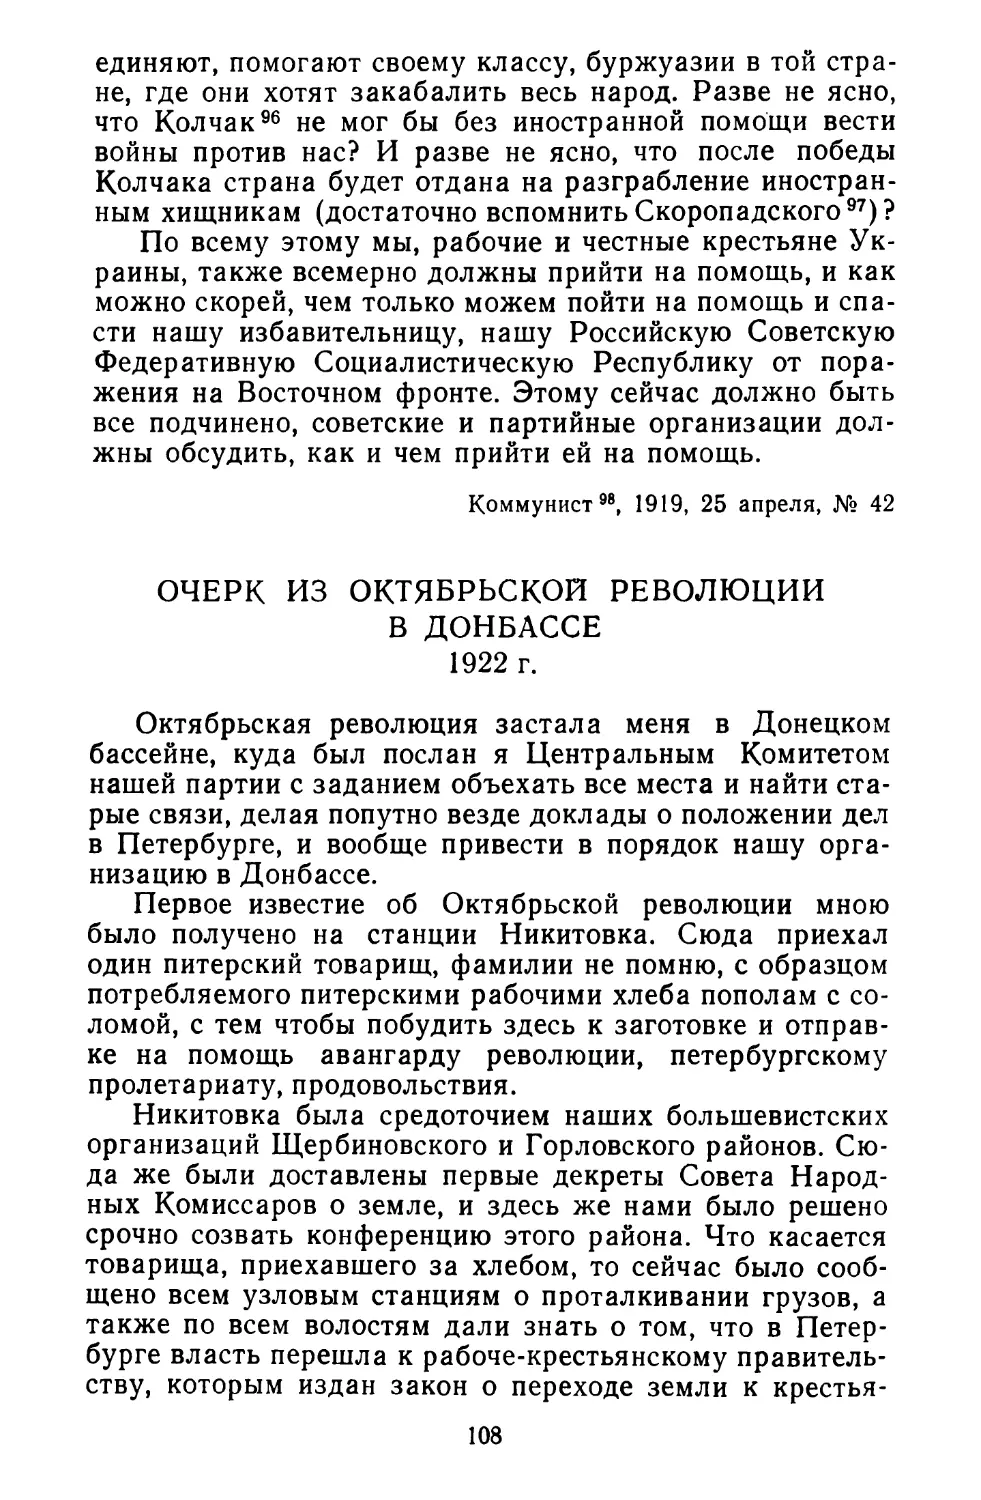 Очерк из Октябрьской революции в Донбассе. 1922 г.